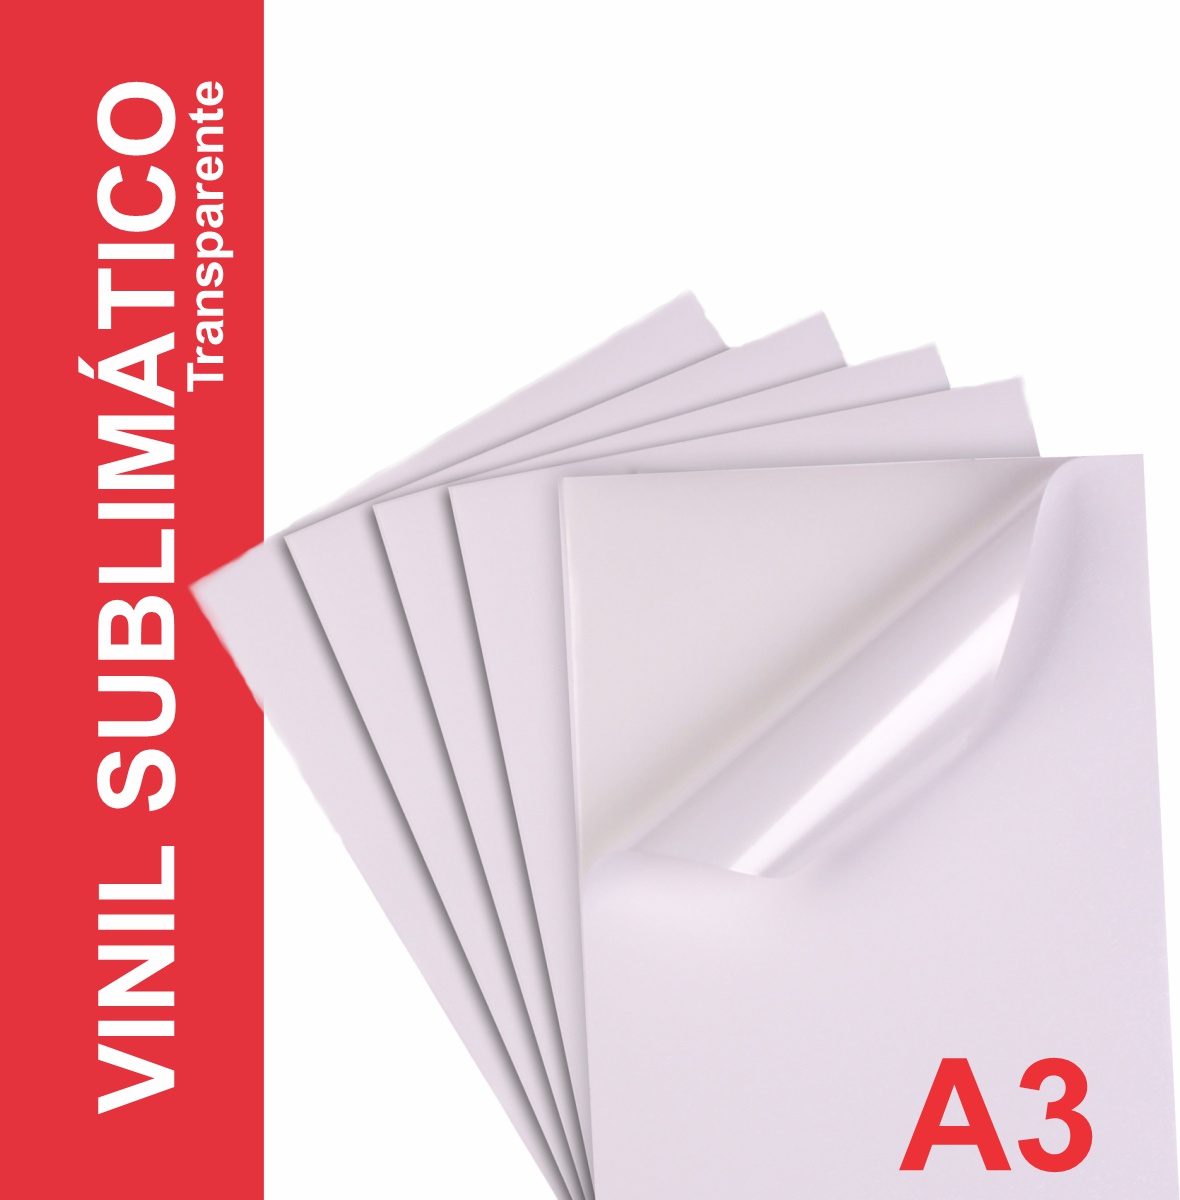 Vinil Adesivo Transparente P/ Sublimação - A3